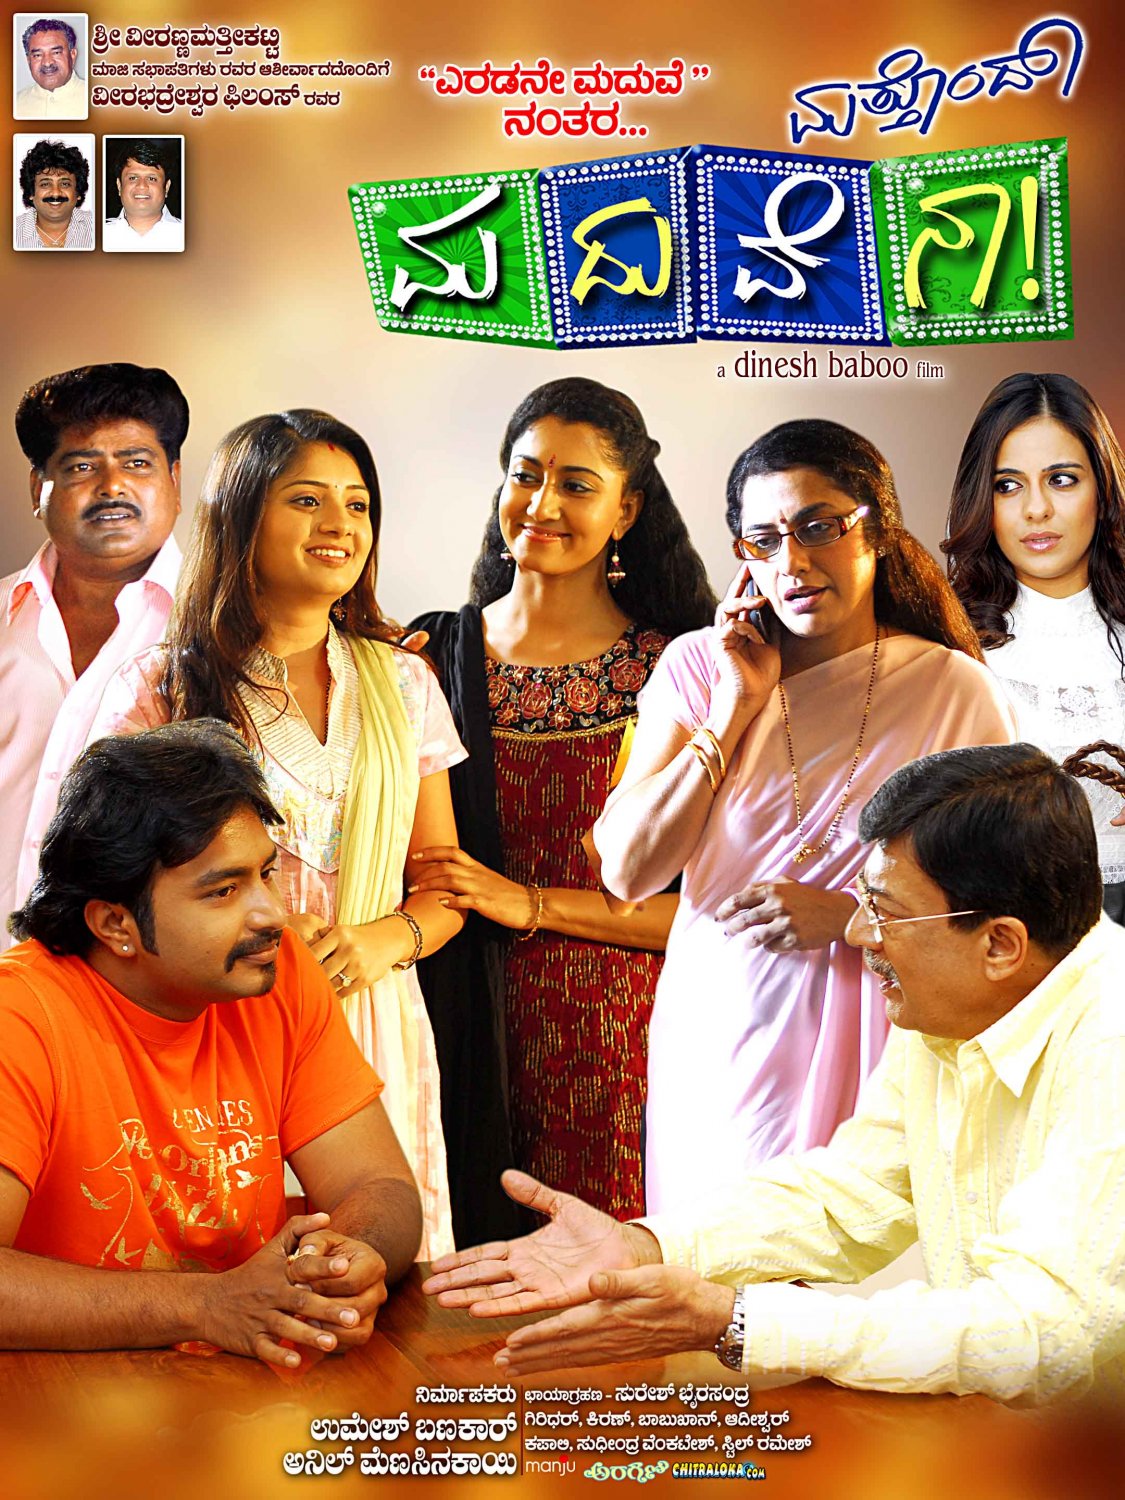 Extra Large Movie Poster Image for Mathondu Madhuvena (#12 of 15)